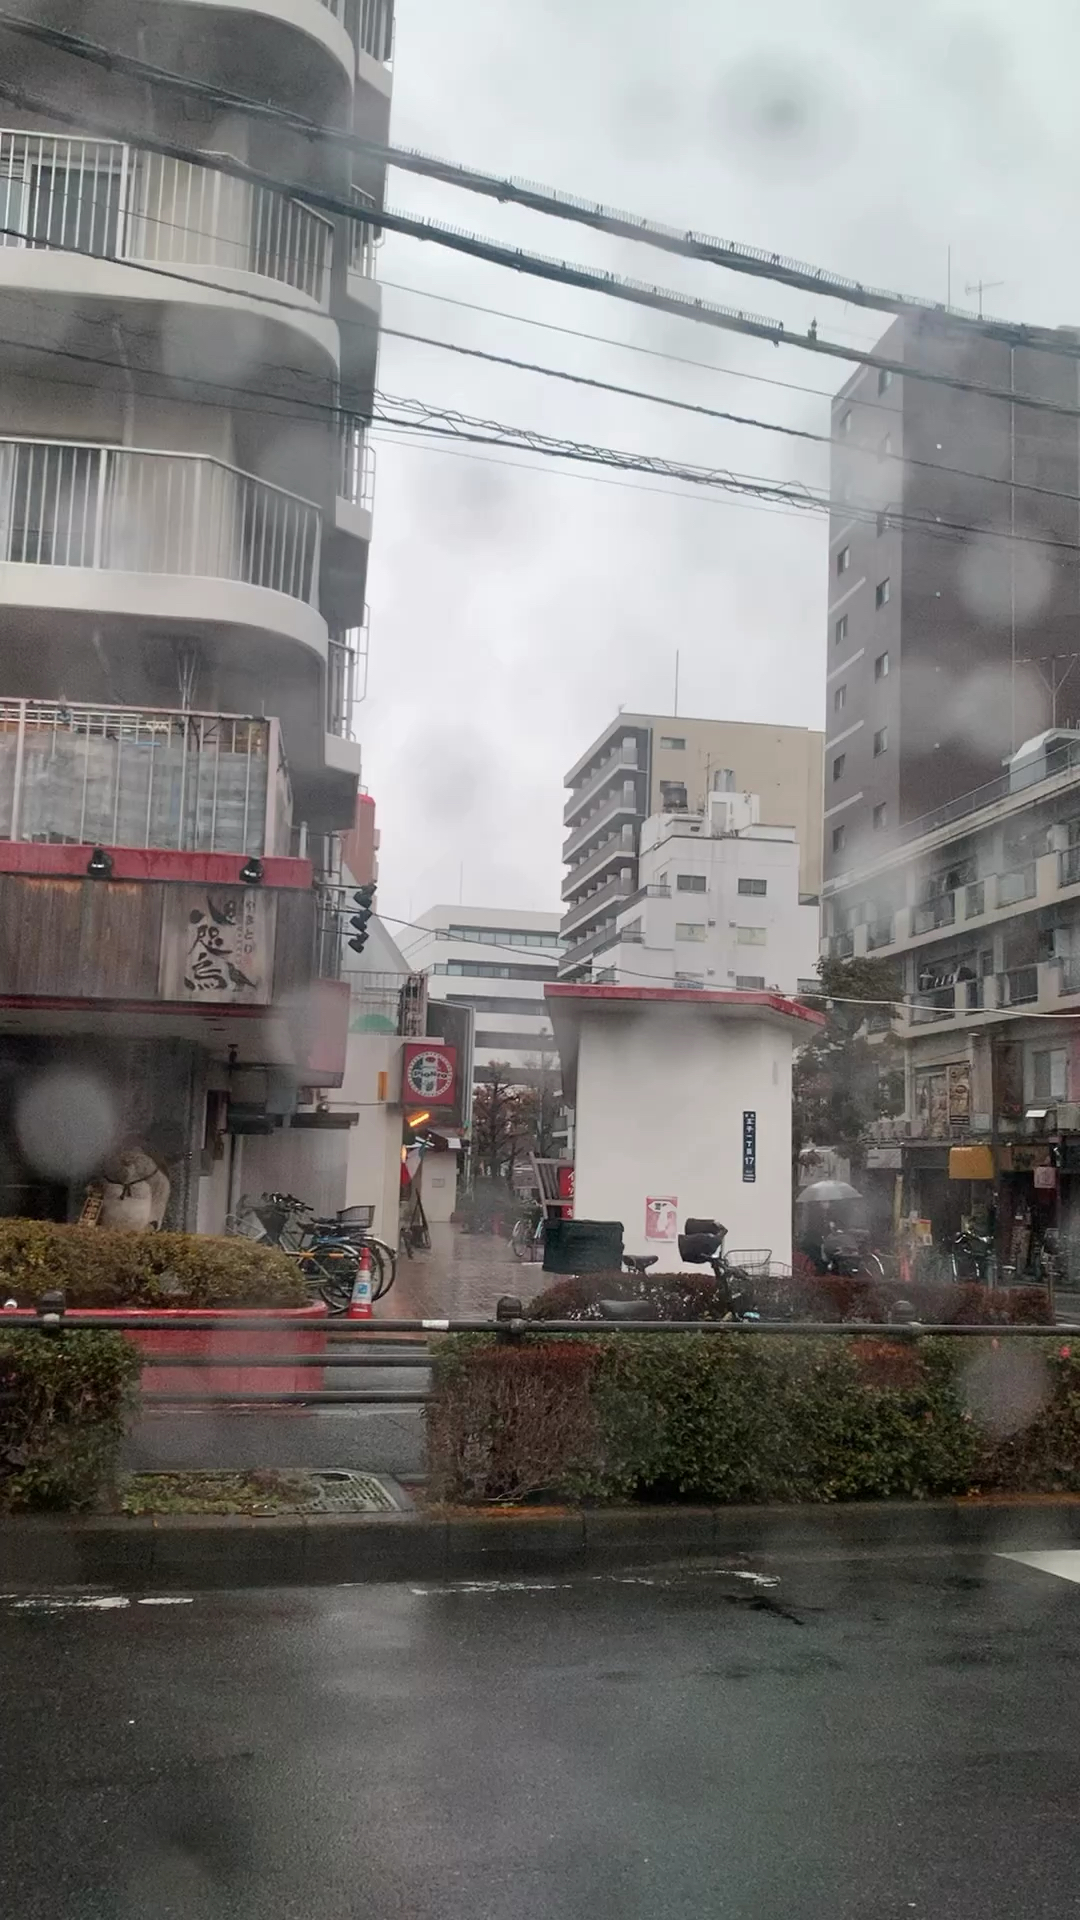 这几天日本好冷呀，而且还下雨 不知道去哪里逛合适[Sweat]